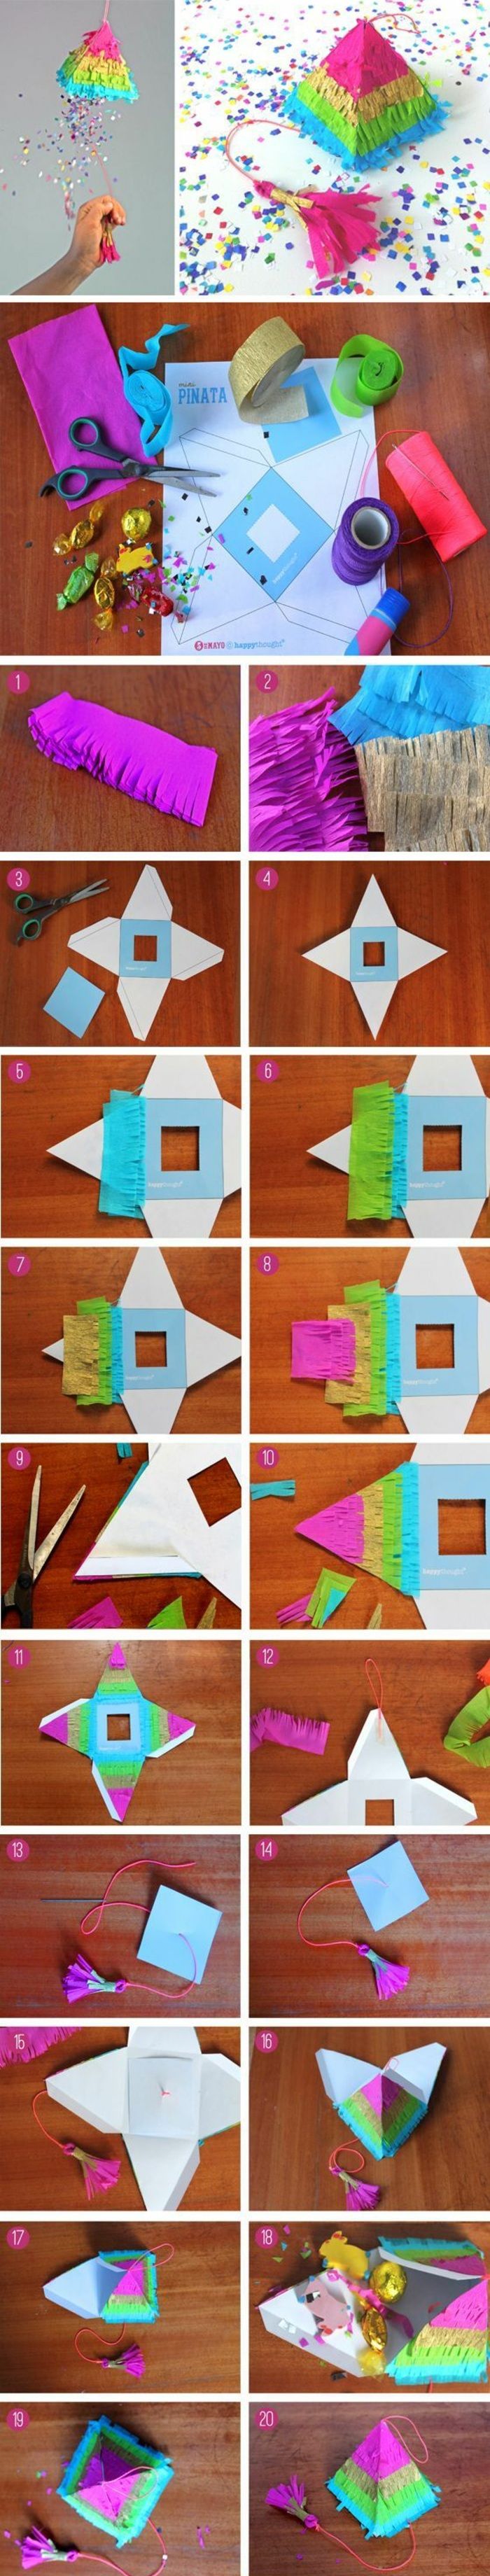 Vytvorte si vlastnú malú pyramídu kartónu, farebný papier, nožnice